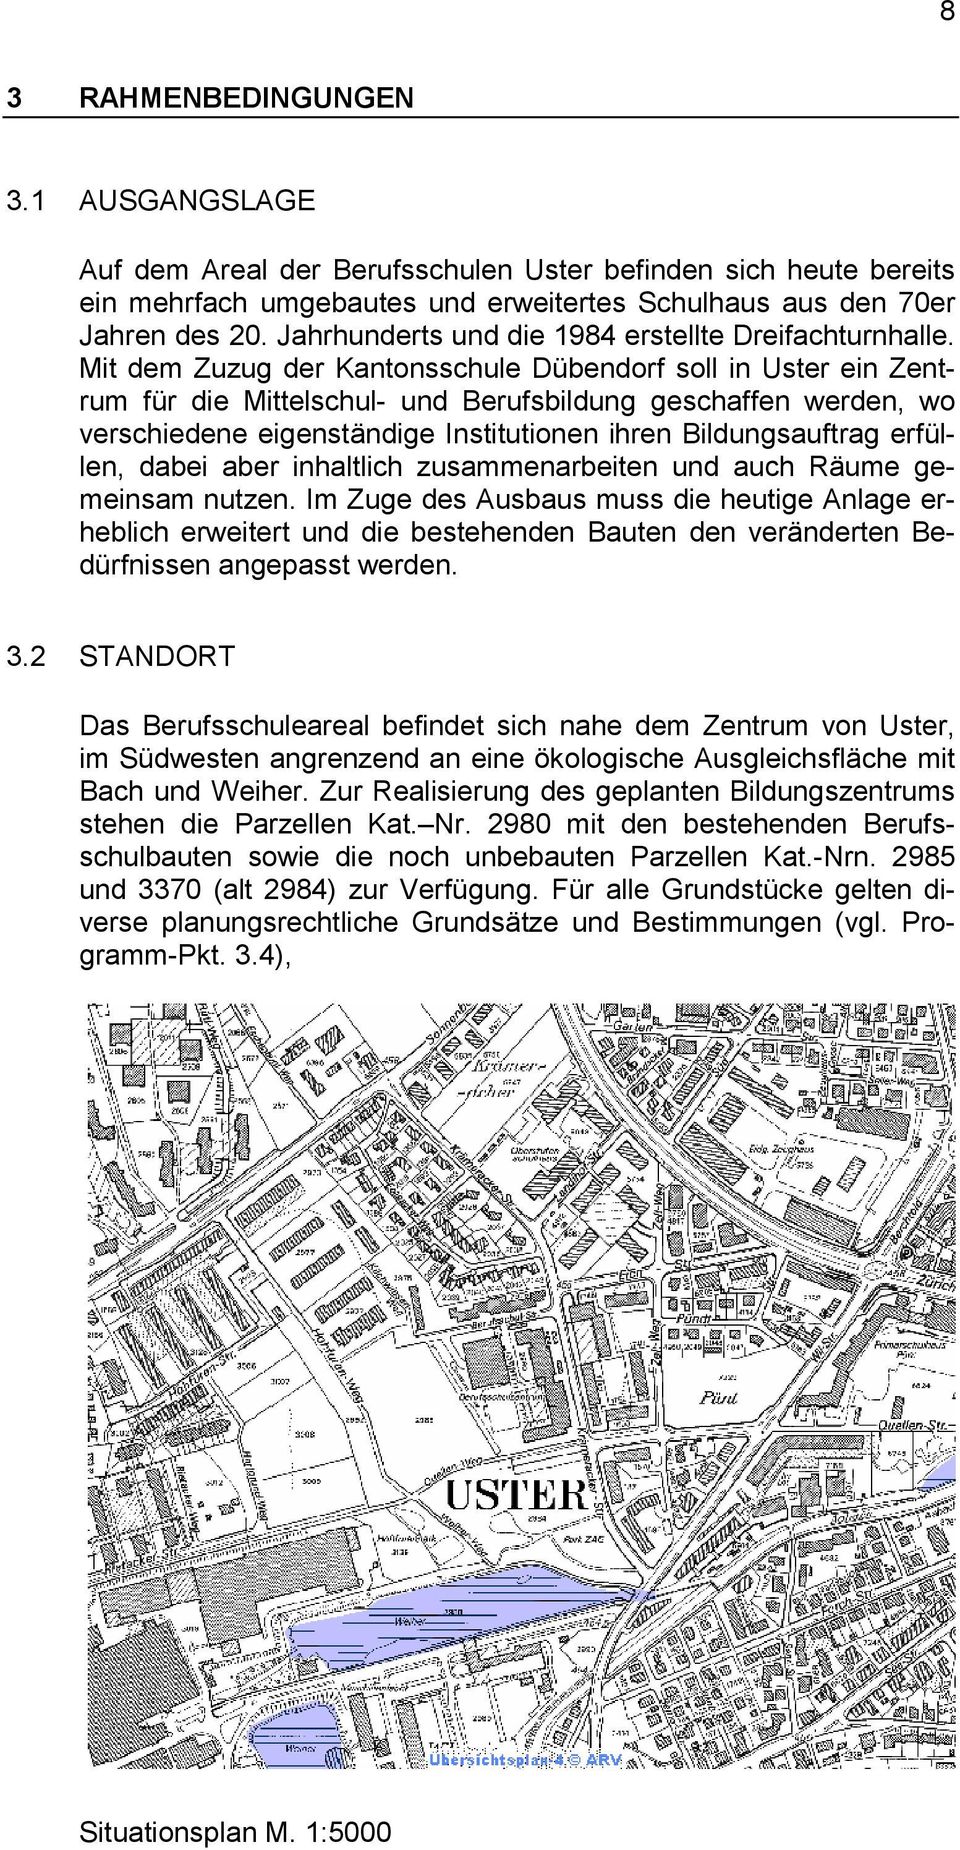 Mit dem Zuzug der Kantonsschule Dübendorf soll in Uster ein Zentrum für die Mittelschul- und Berufsbildung geschaffen werden, wo verschiedene eigenständige Institutionen ihren Bildungsauftrag